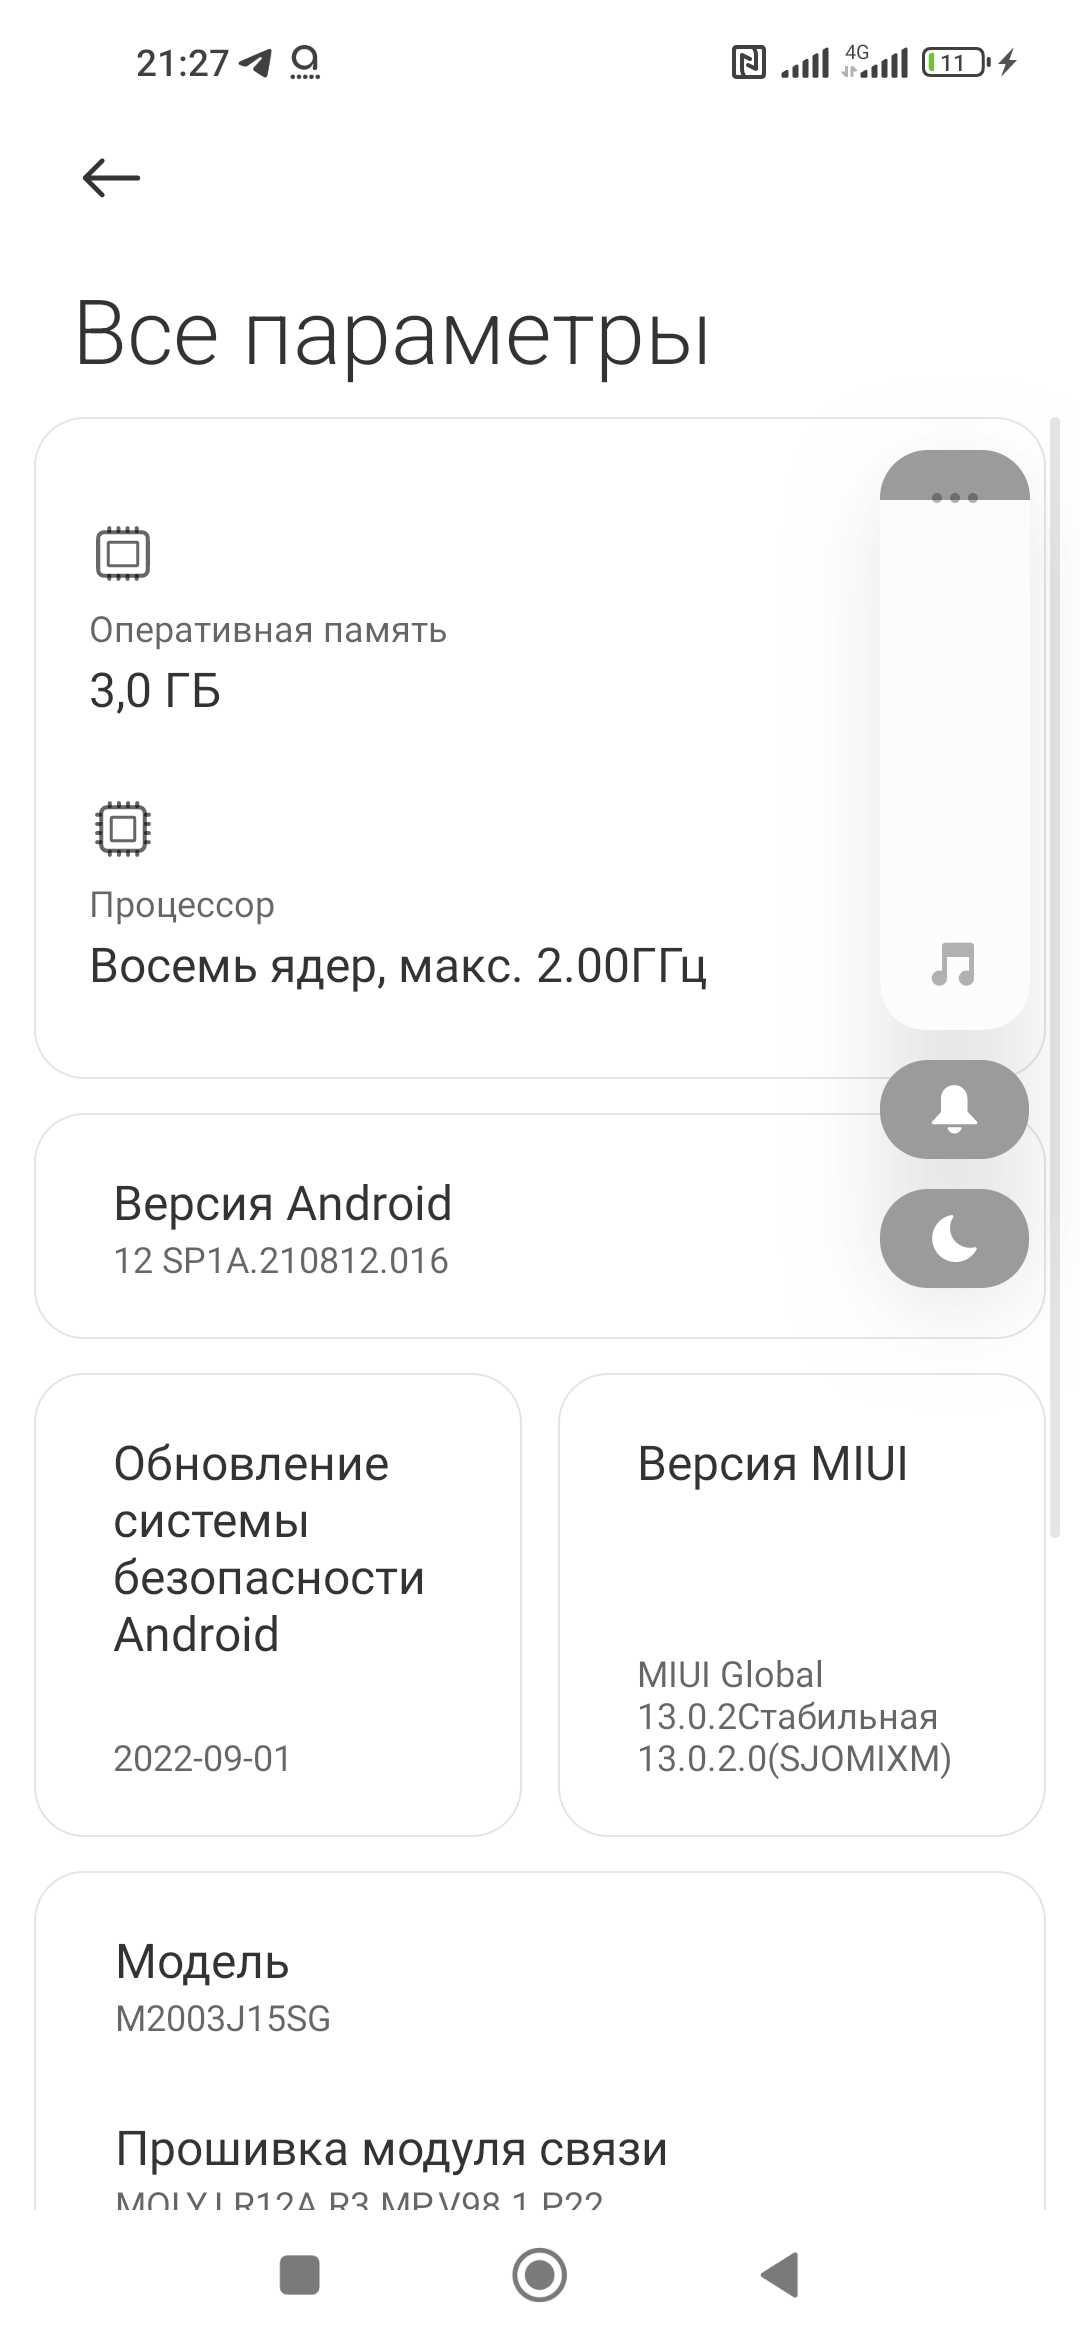 Телефон Xiaomi note 9